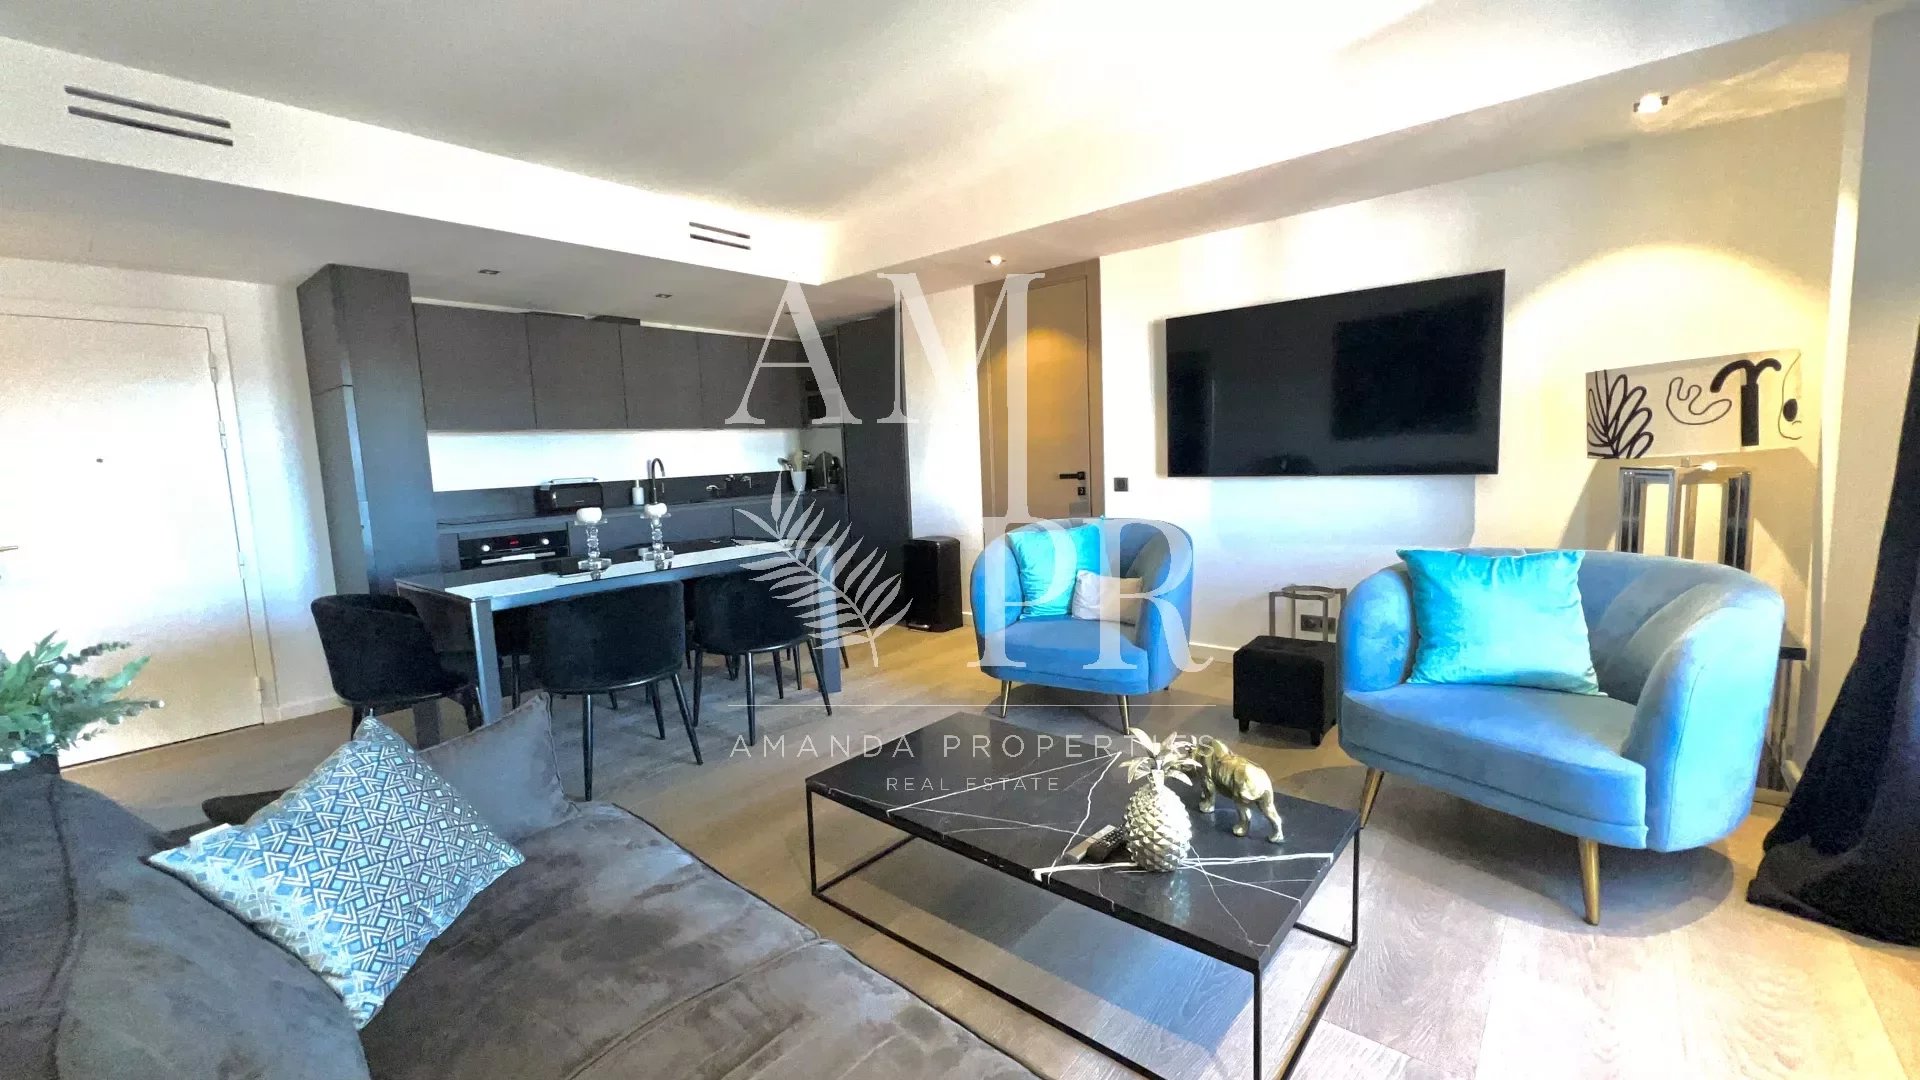 EXCLUSIVITE - Superbe appartement 90 m² - Etage élevé - Cannes banane